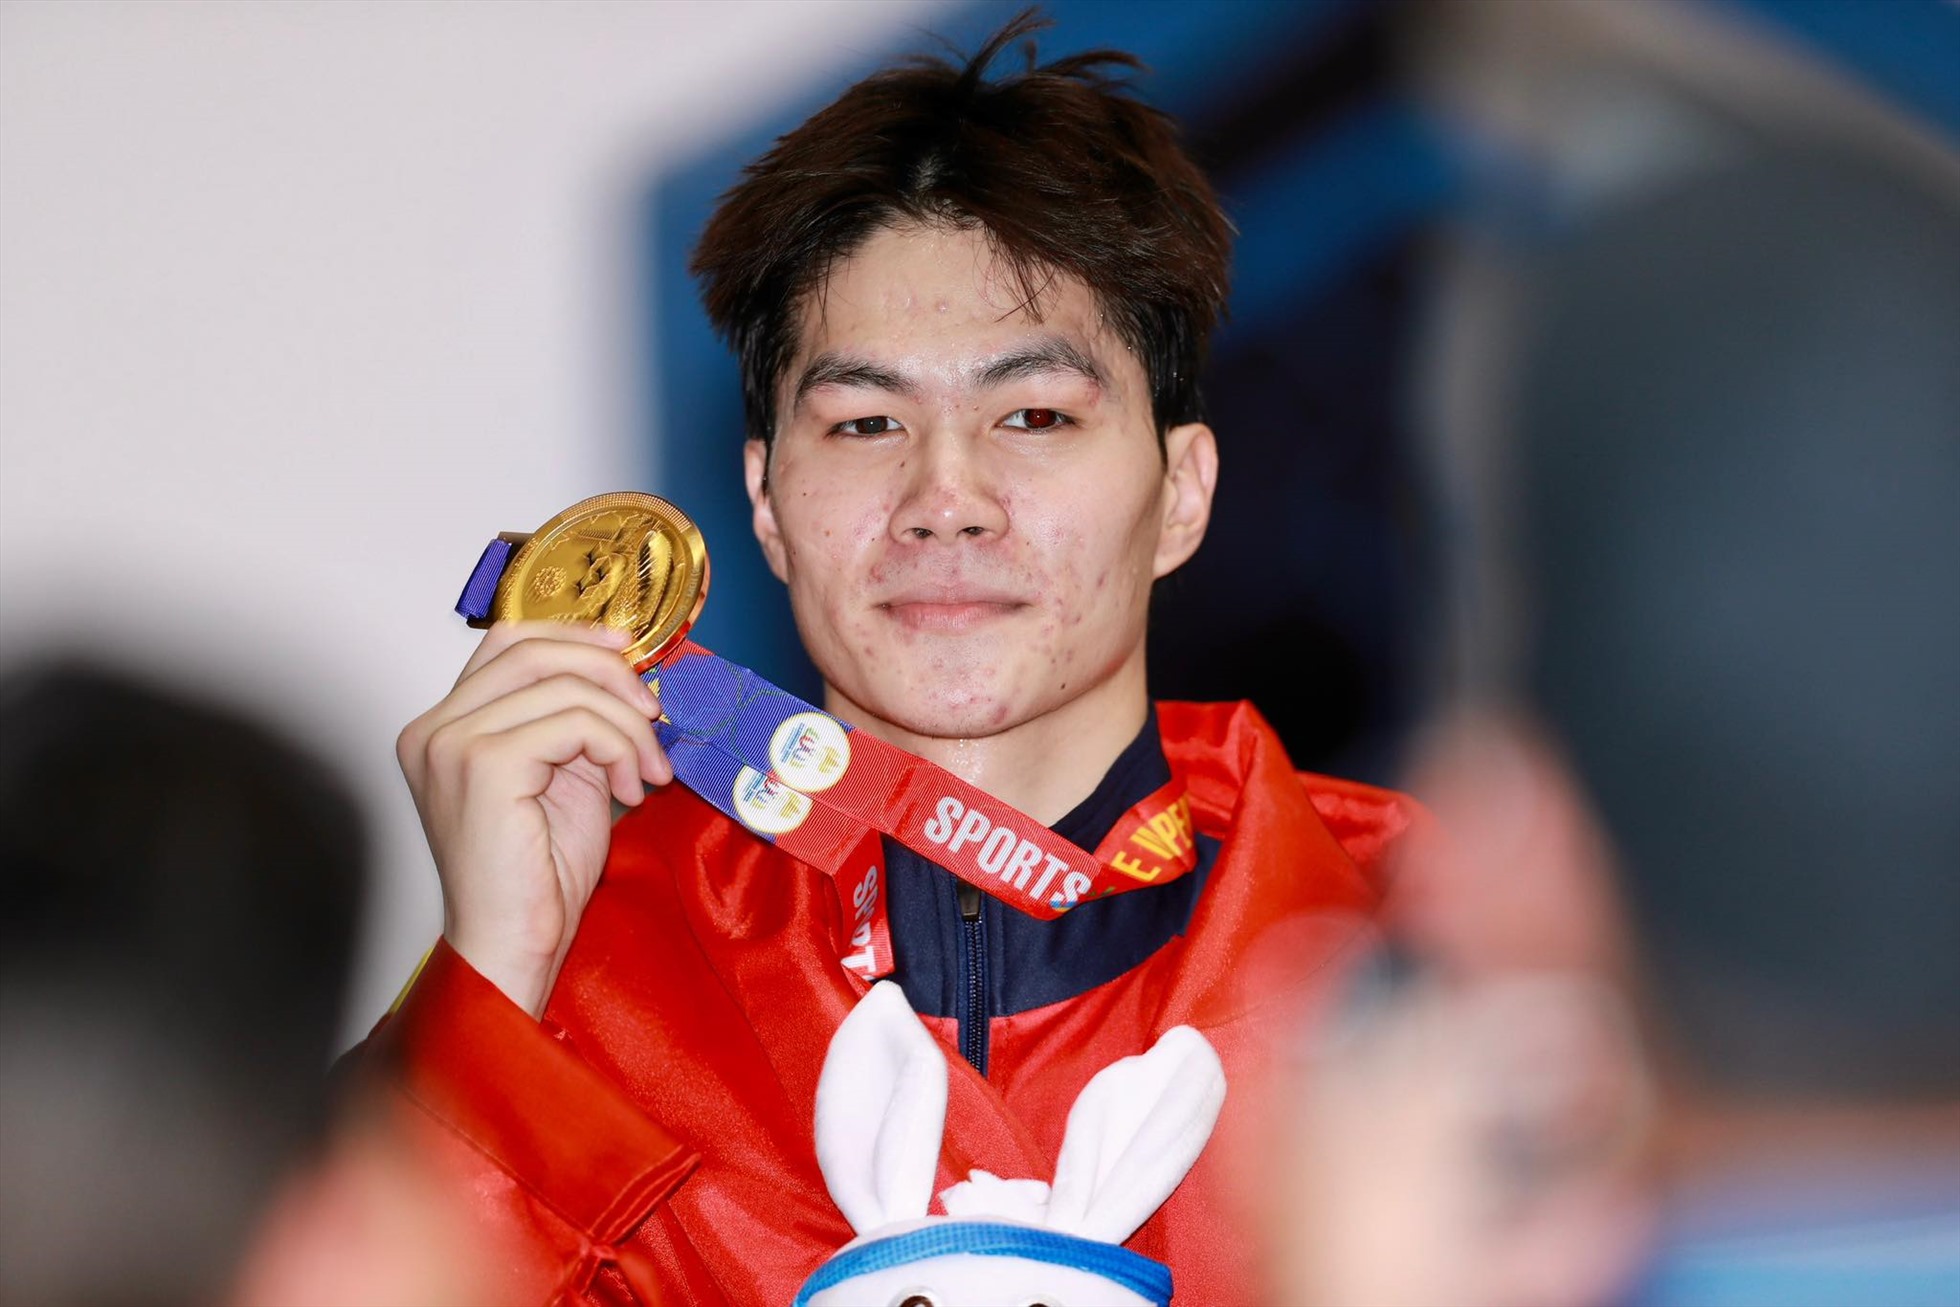 Hưng Nguyên giành huy chương vàng 200m hỗn hợp nam. Ảnh: Thanh Vũ